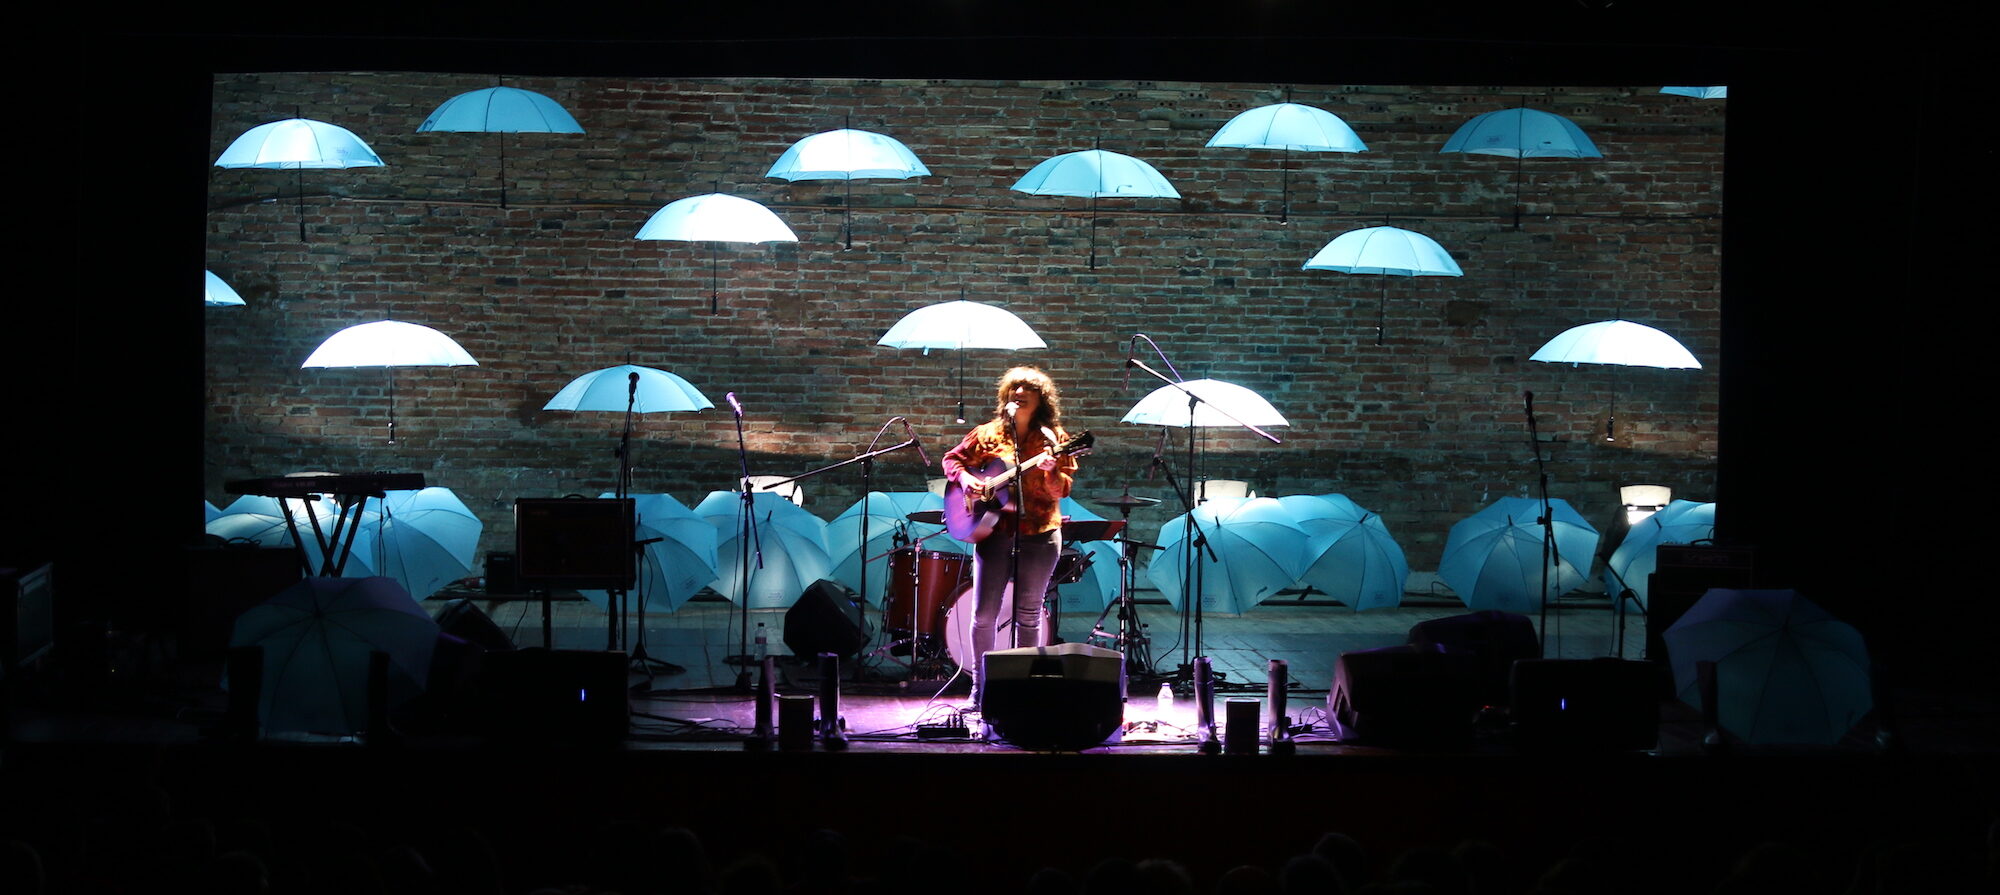 Joana Serrat, durant el concert de la Riumuntada, el dissabte 23 de novembre (fotografia: Riuada Solidària).